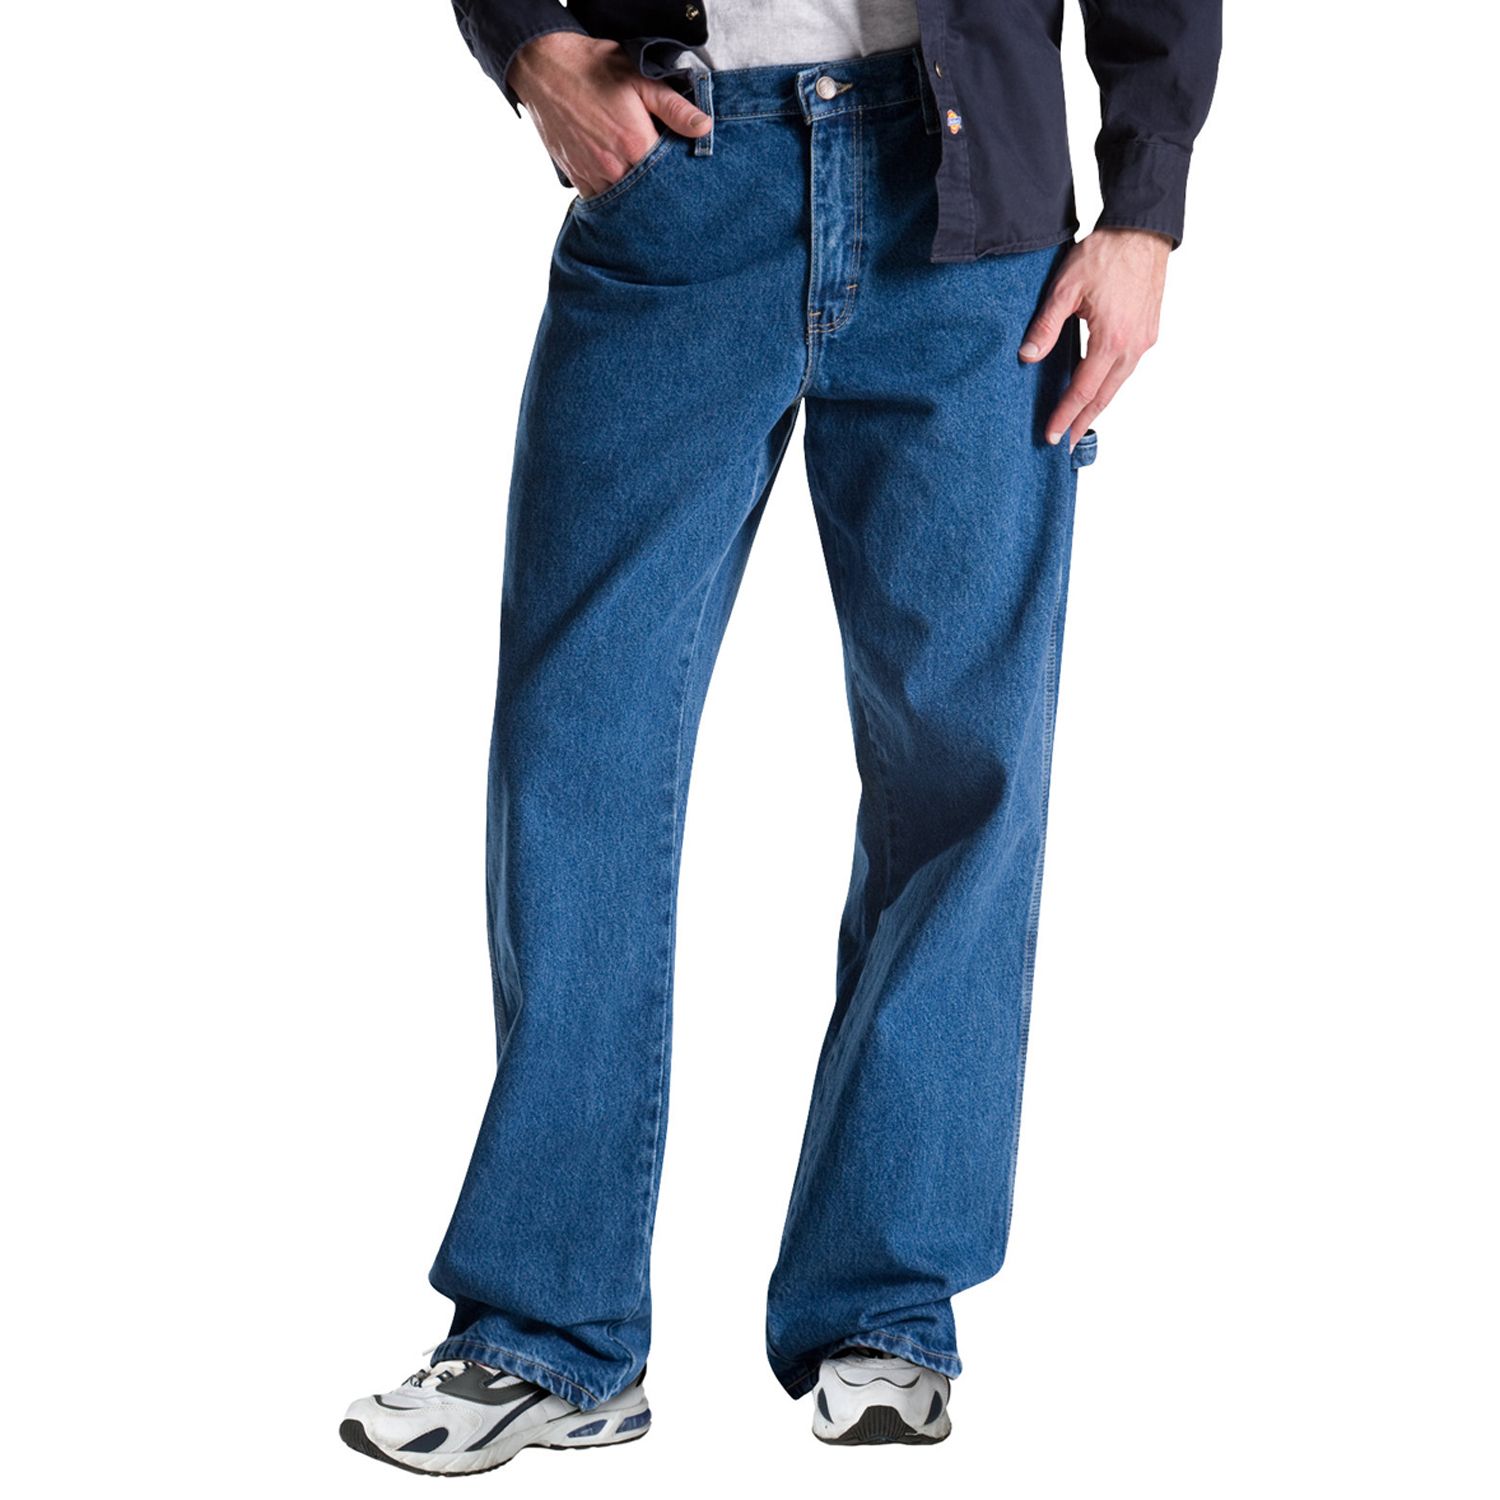 dickies jeans loose fit